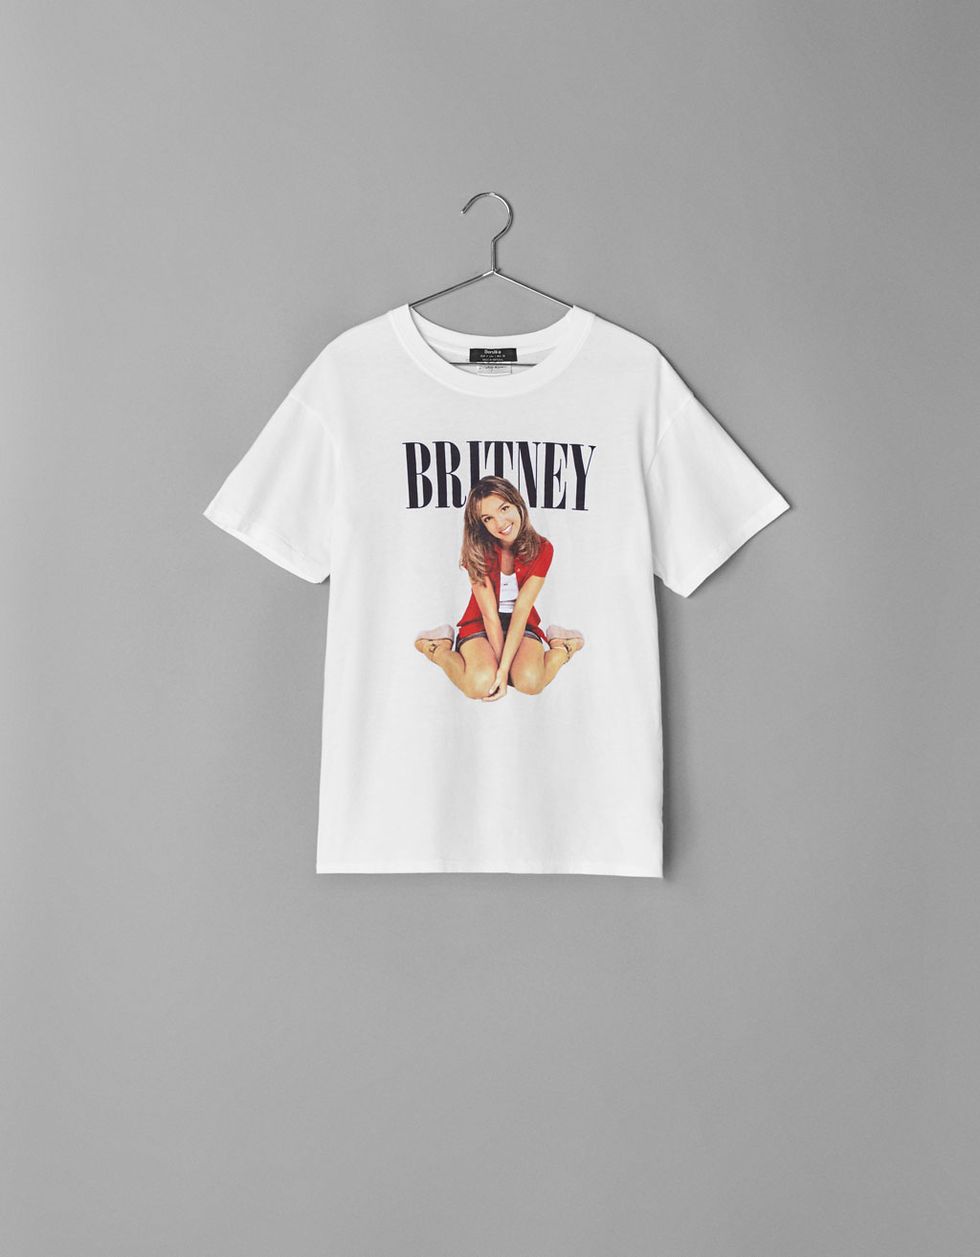 Tormento Gato de salto término análogo Britney Spears está de vuelta y estas camisetas lo demuestran - Camiseta  Britney Spears